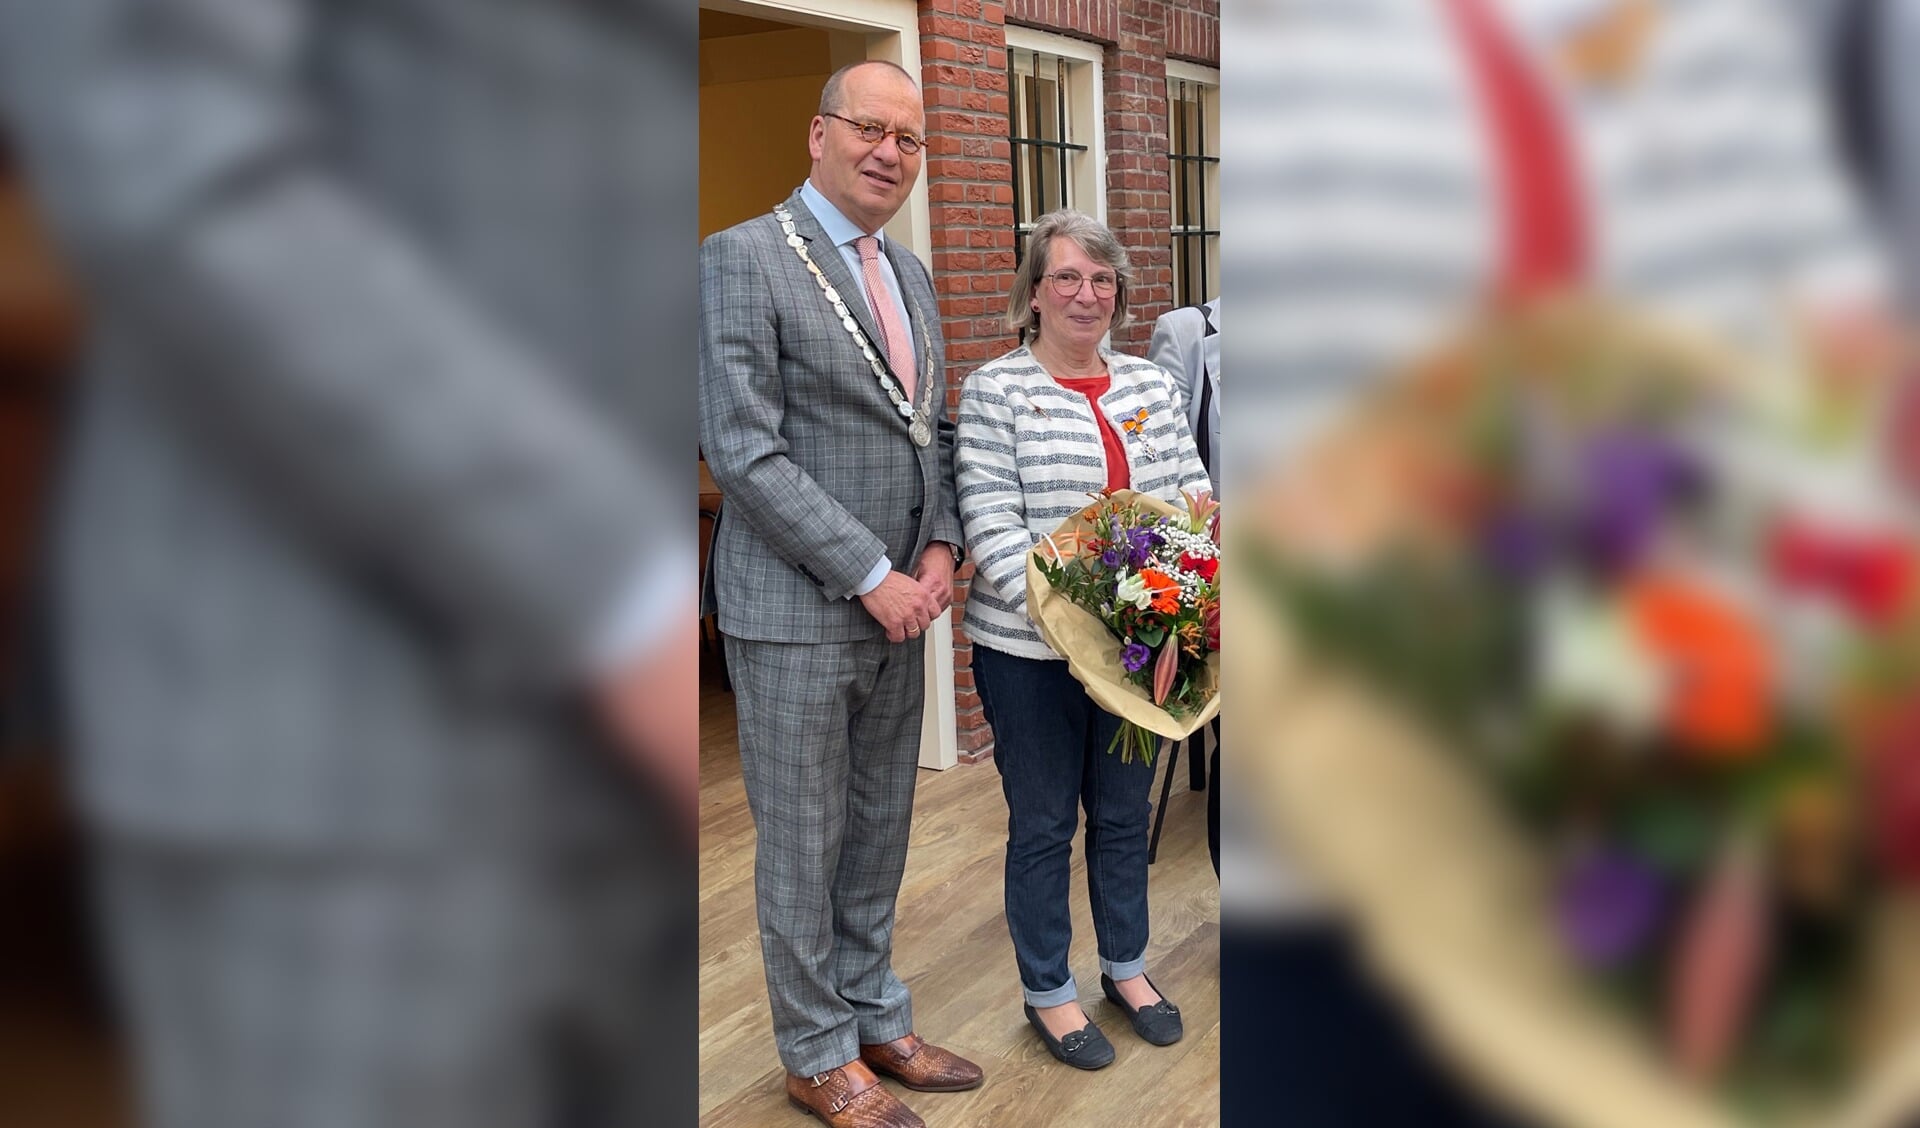 Jeannet Hommel-Rozendaal is benoemd tot Ridder in de Orde van Oranje-Nassau tijdens haar afscheid als voorzitter van de Vecon bij de algemene ledenvergadering